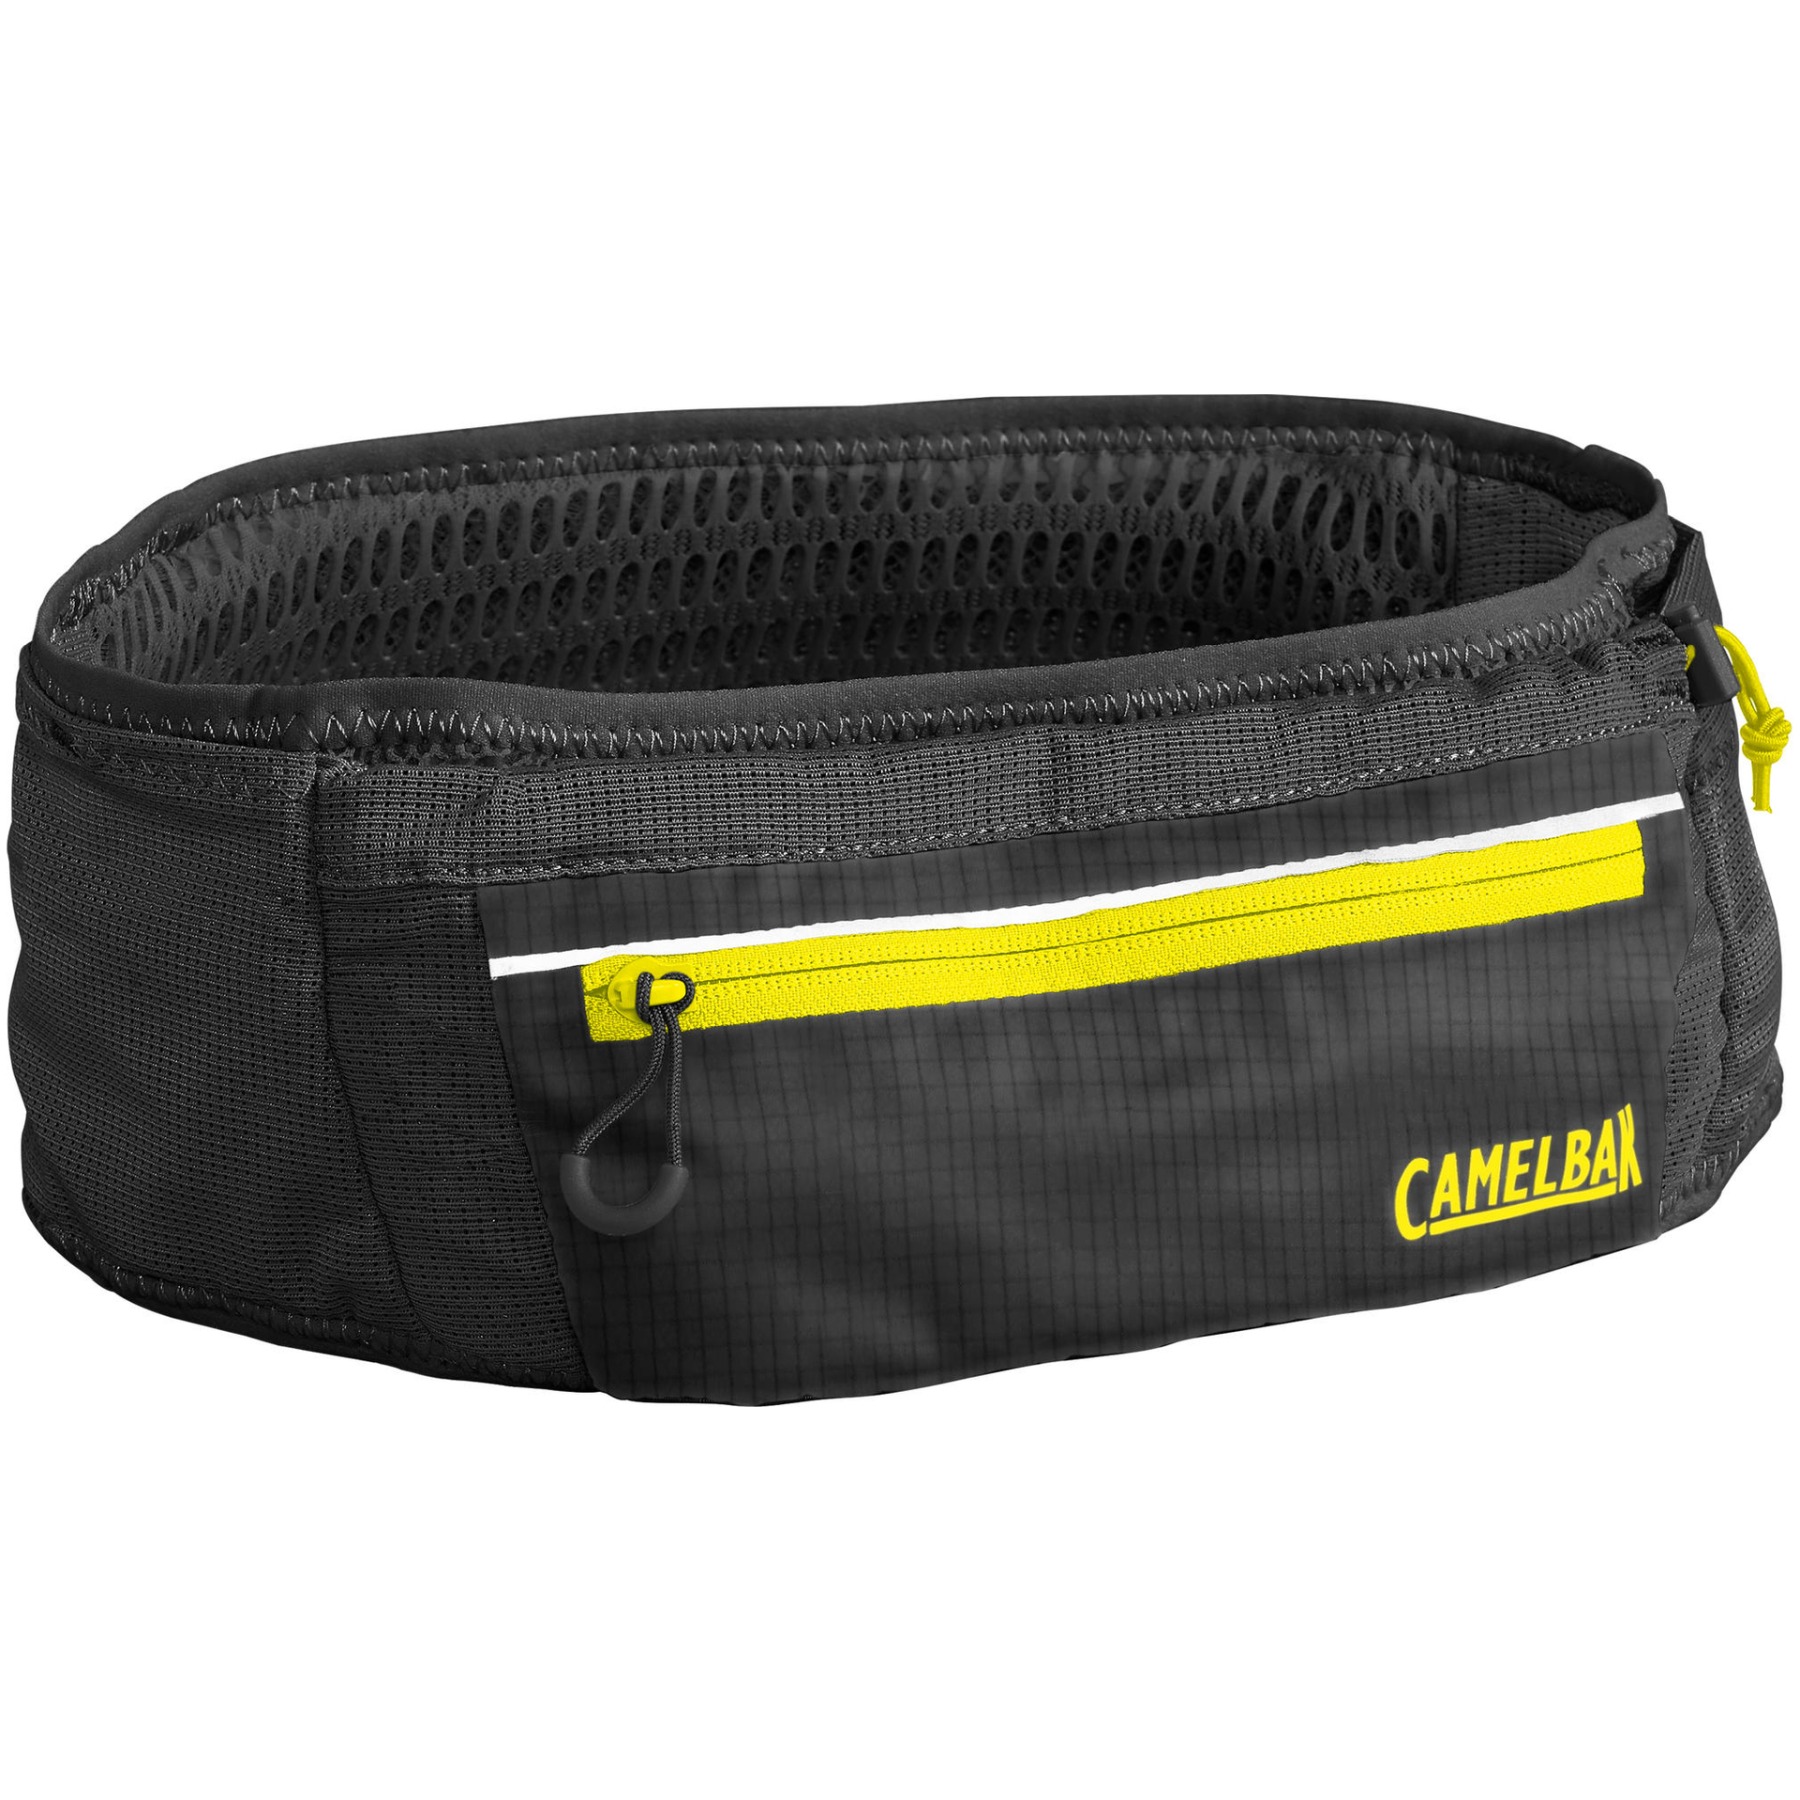 Produktbild von CamelBak Ultra Belt Hüfttasche - S/M - black/safety yellow